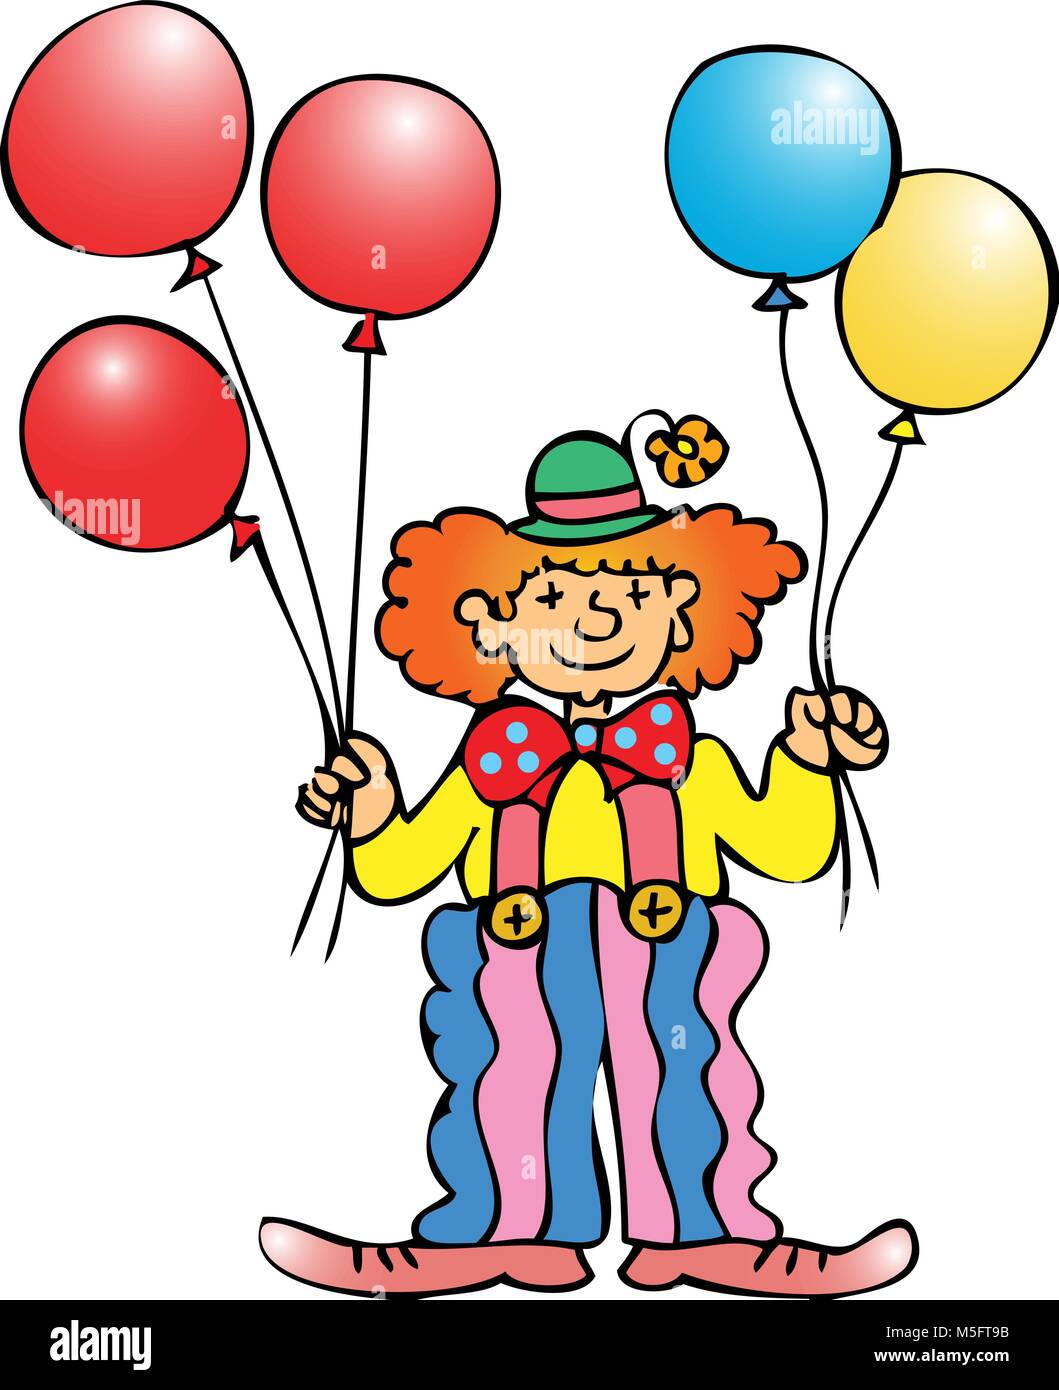 Ein Zirkus Clown mit roten, gelben und blauen Ballons Stock Vektor